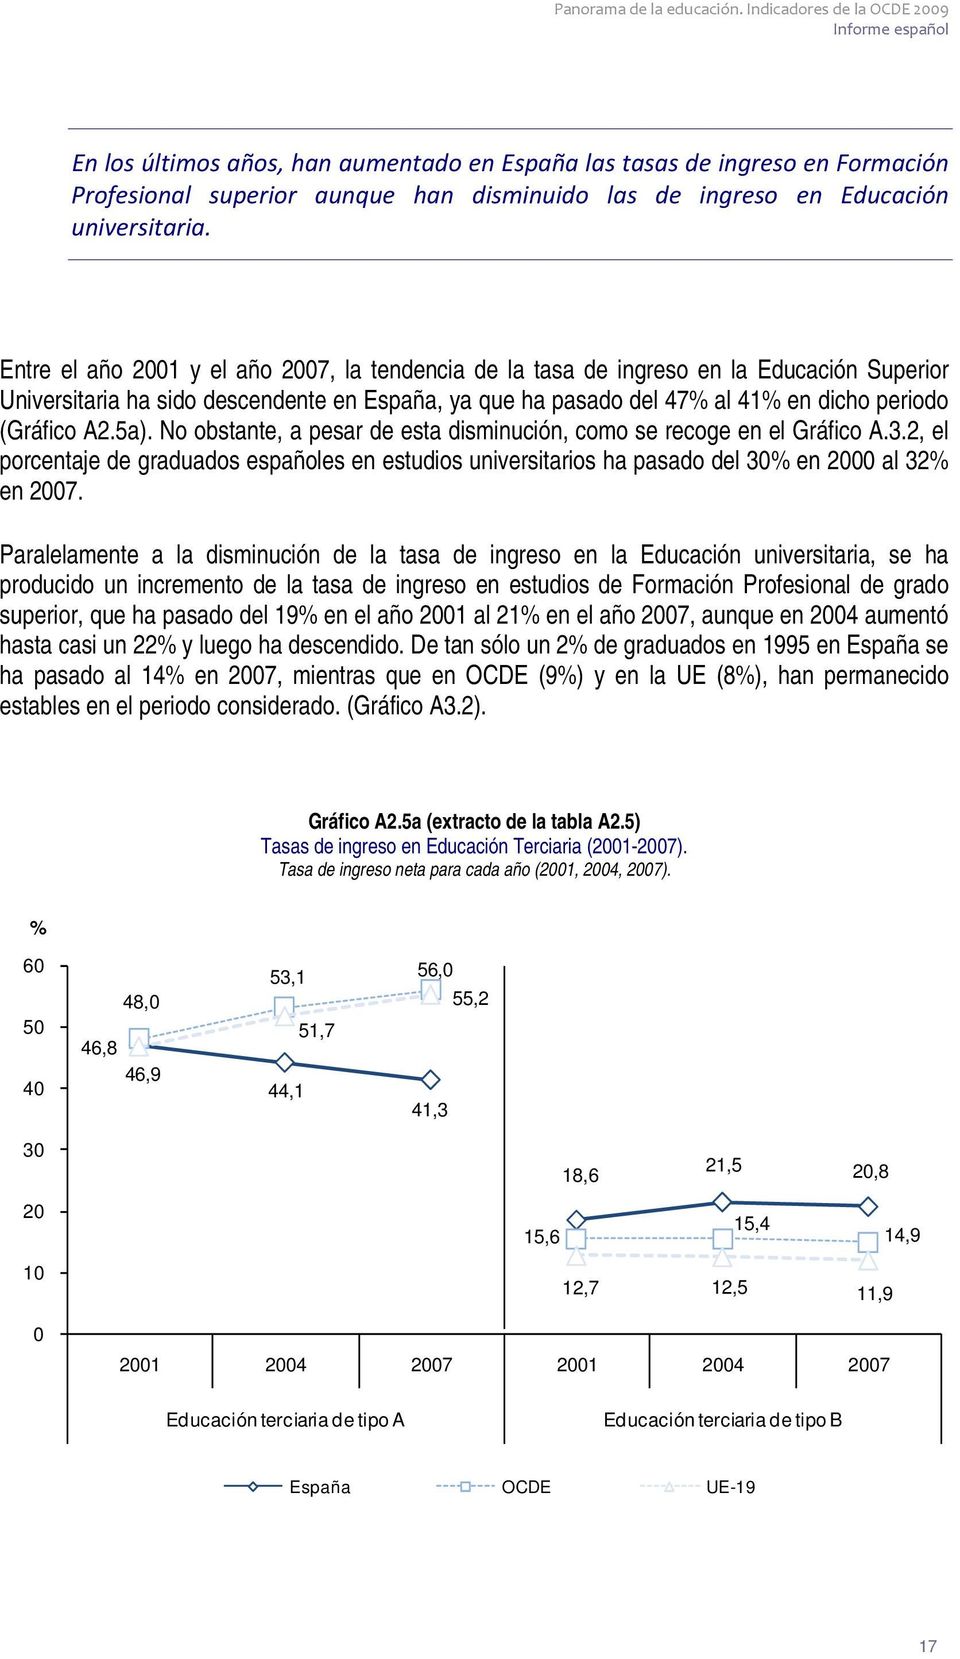 5a). No obstante, a pesar de esta disminución, como se recoge en el Gráfico A.3.2, el porcentaje de graduados españoles en estudios universitarios ha pasado del 30% en 2000 al 32% en 2007.